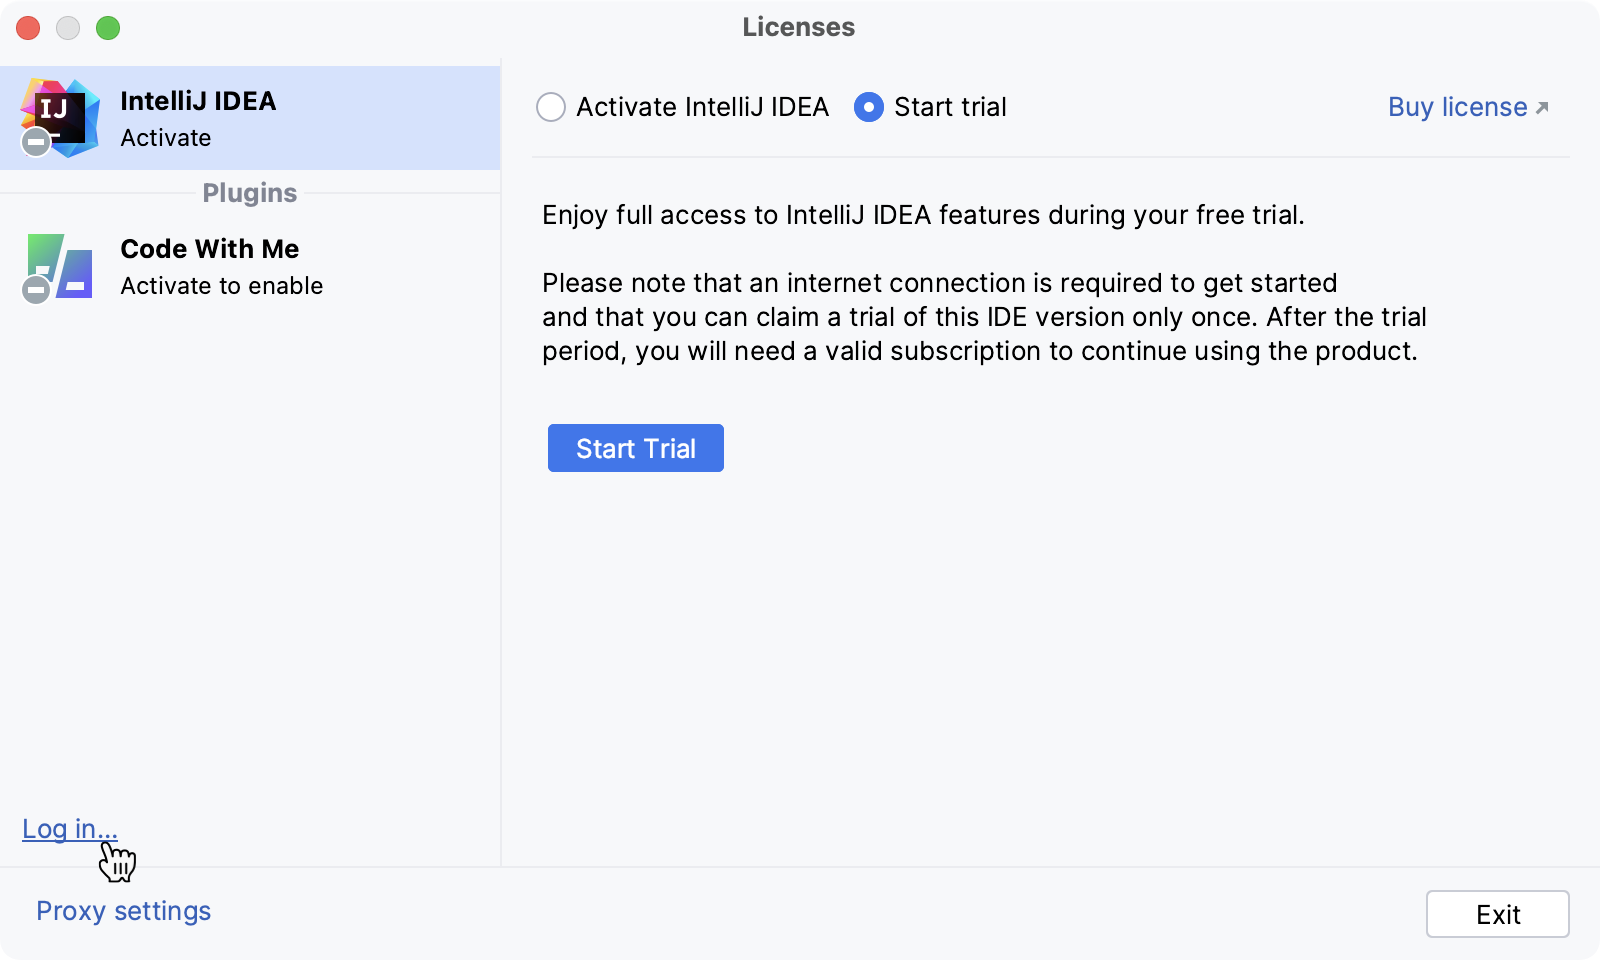 登录 JetBrains 账户开始试用版